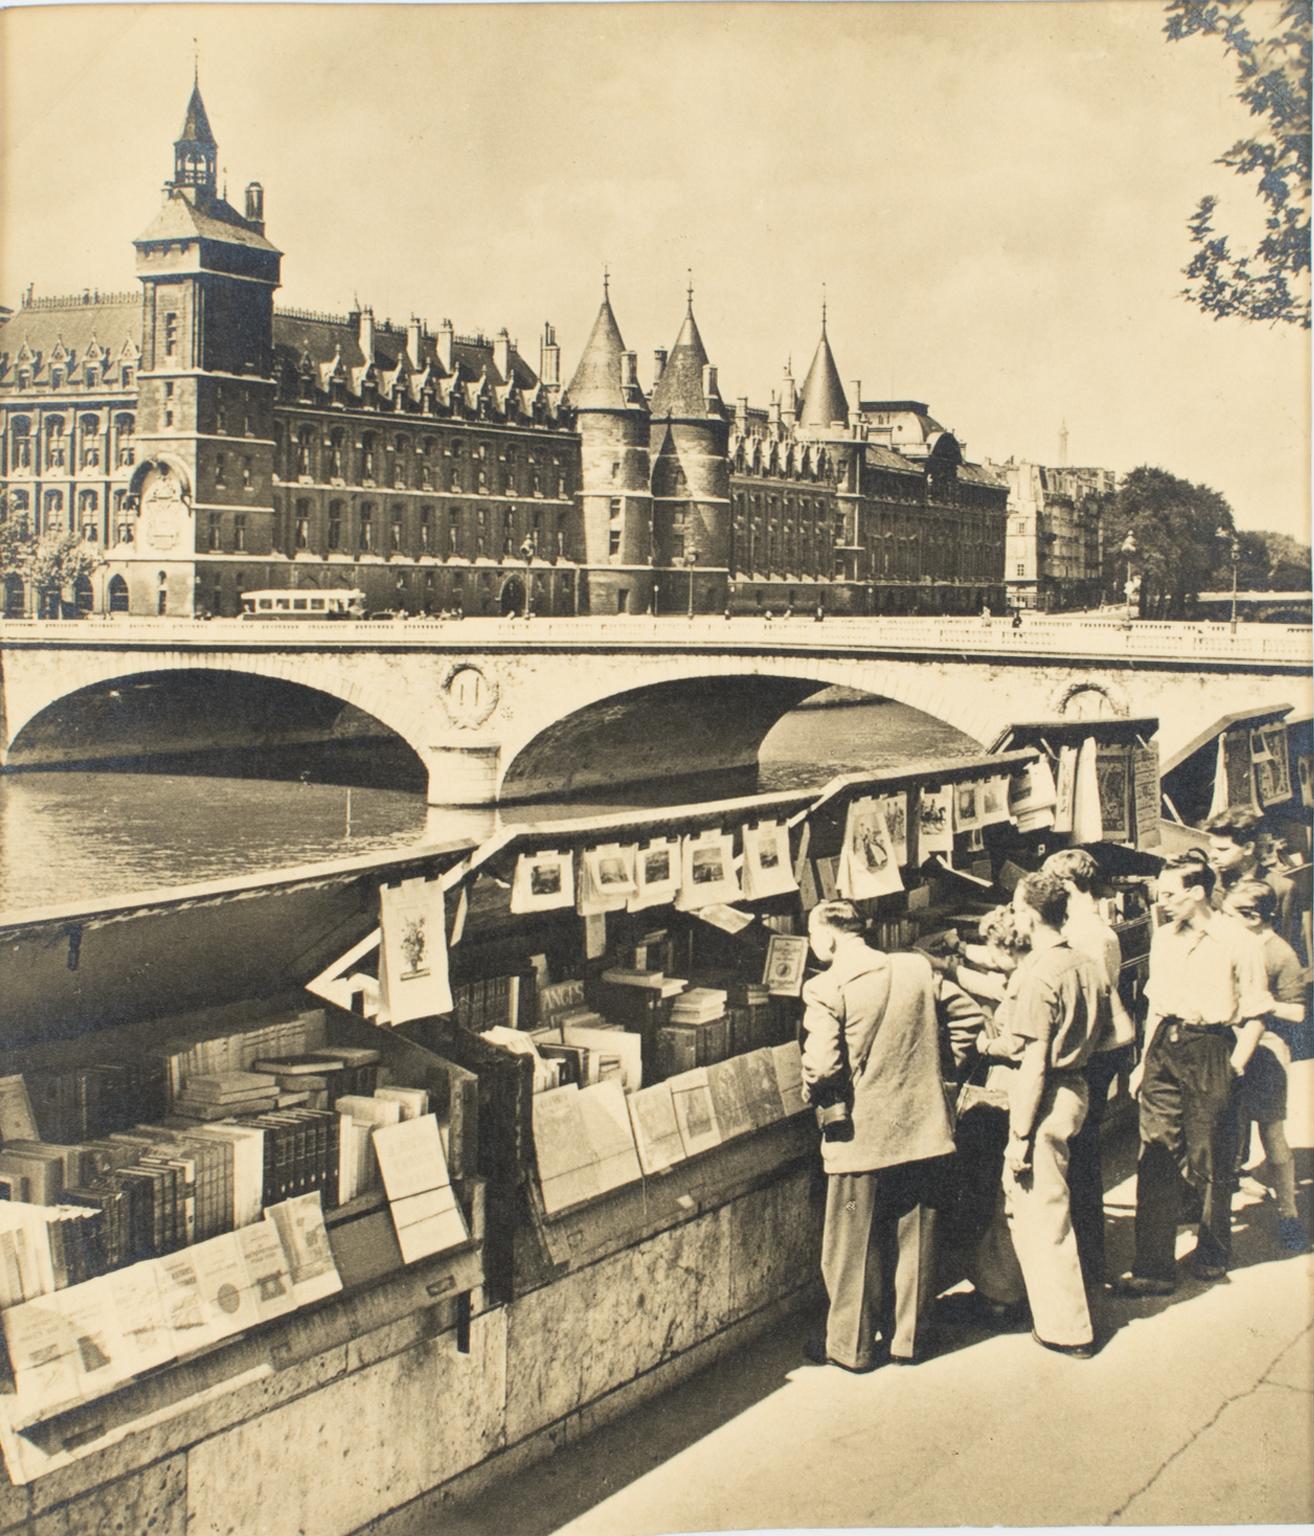 Paris, The Riverbank Booksellers – Postkartenplakat mit Originalfotografie in Schwarz-Weiß